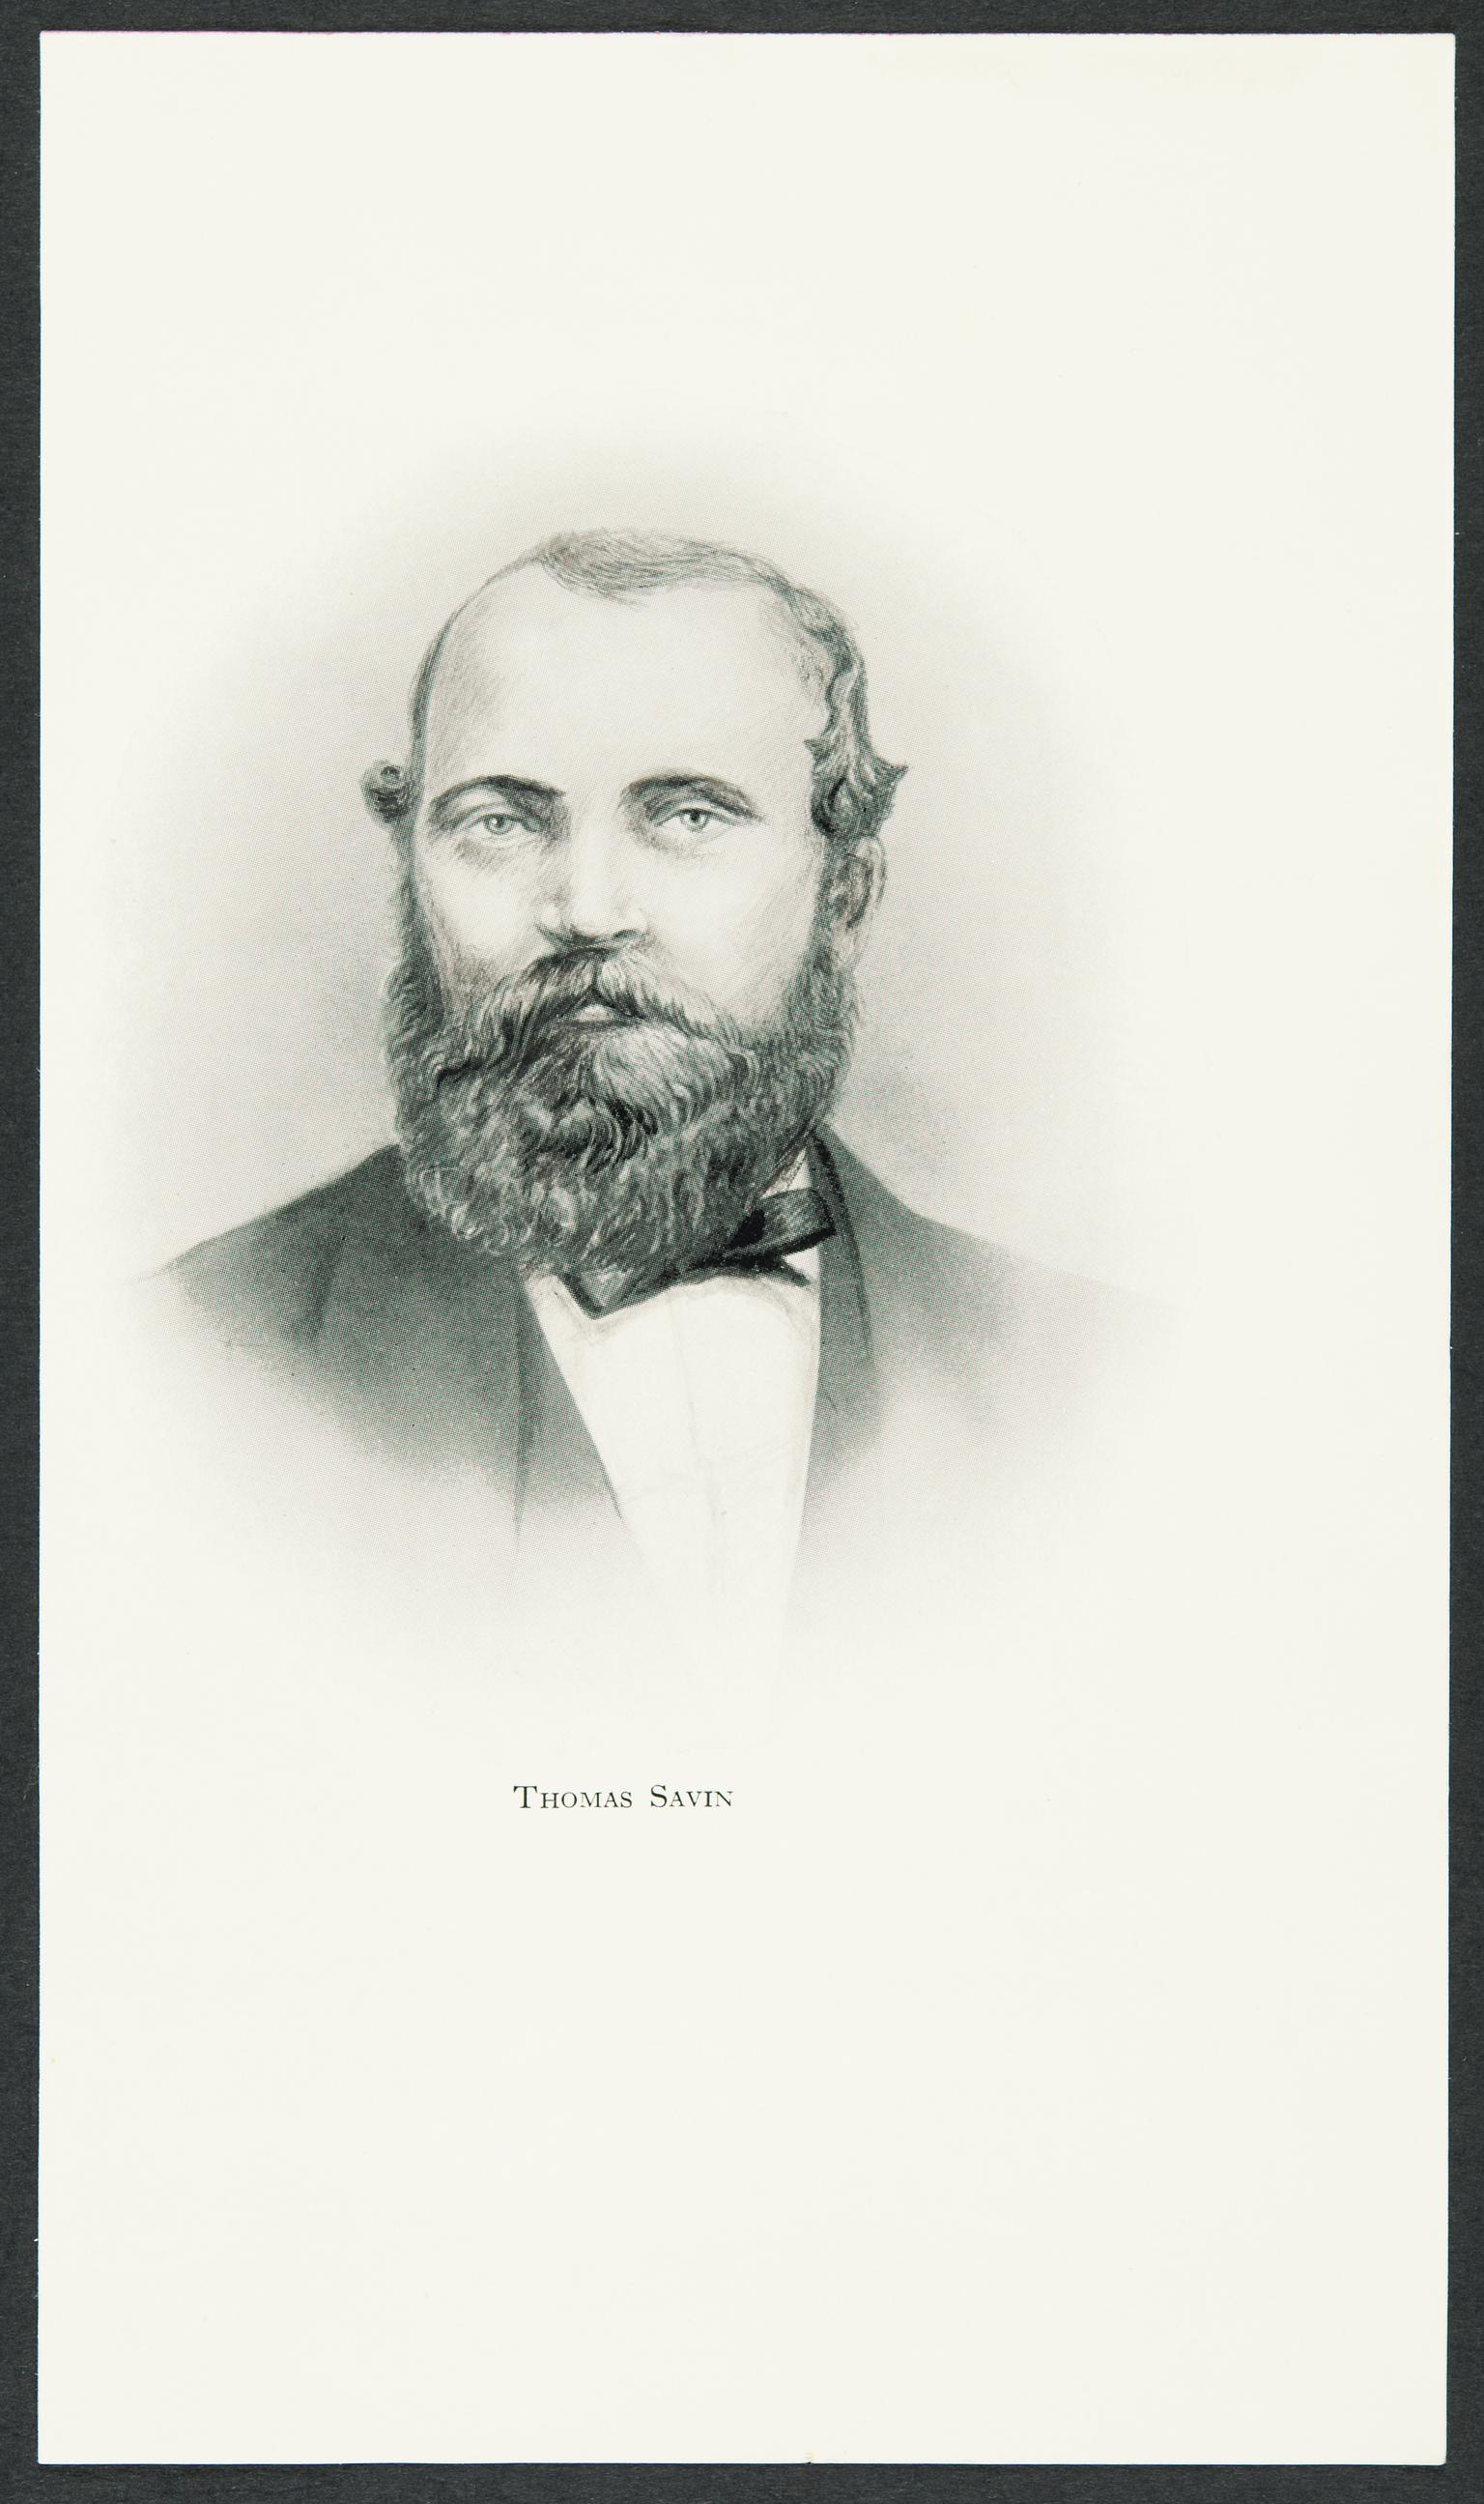 Thomas Savin (print)